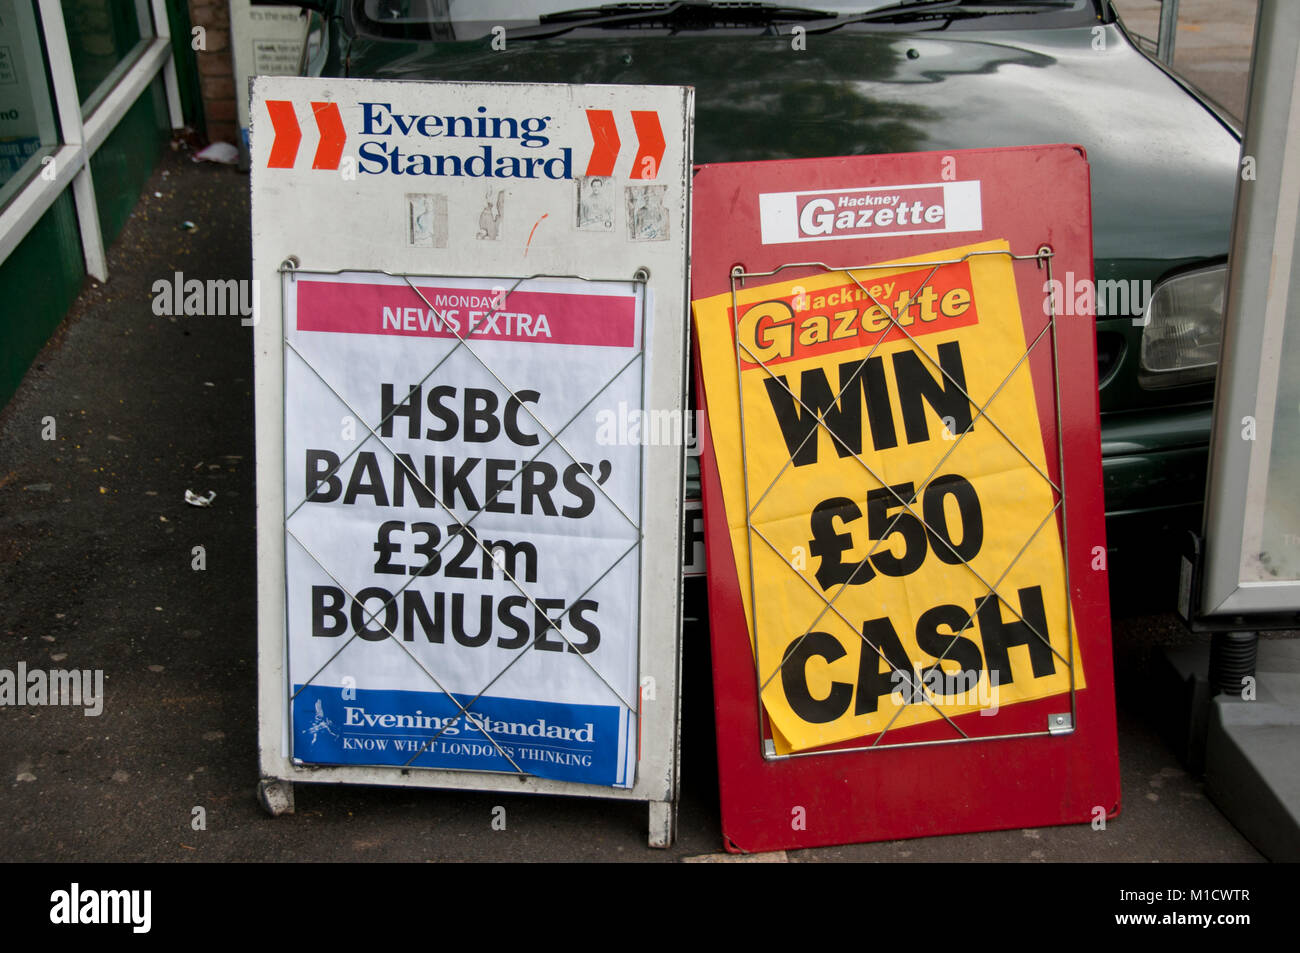 Ungleichheit. Ein Abend Standard Schlagzeile ist HSBC-Banker £ 32 Millionen Boni, während lokale Papier Hackney Zeitung bietet einen Preis von £ 50 Stockfoto